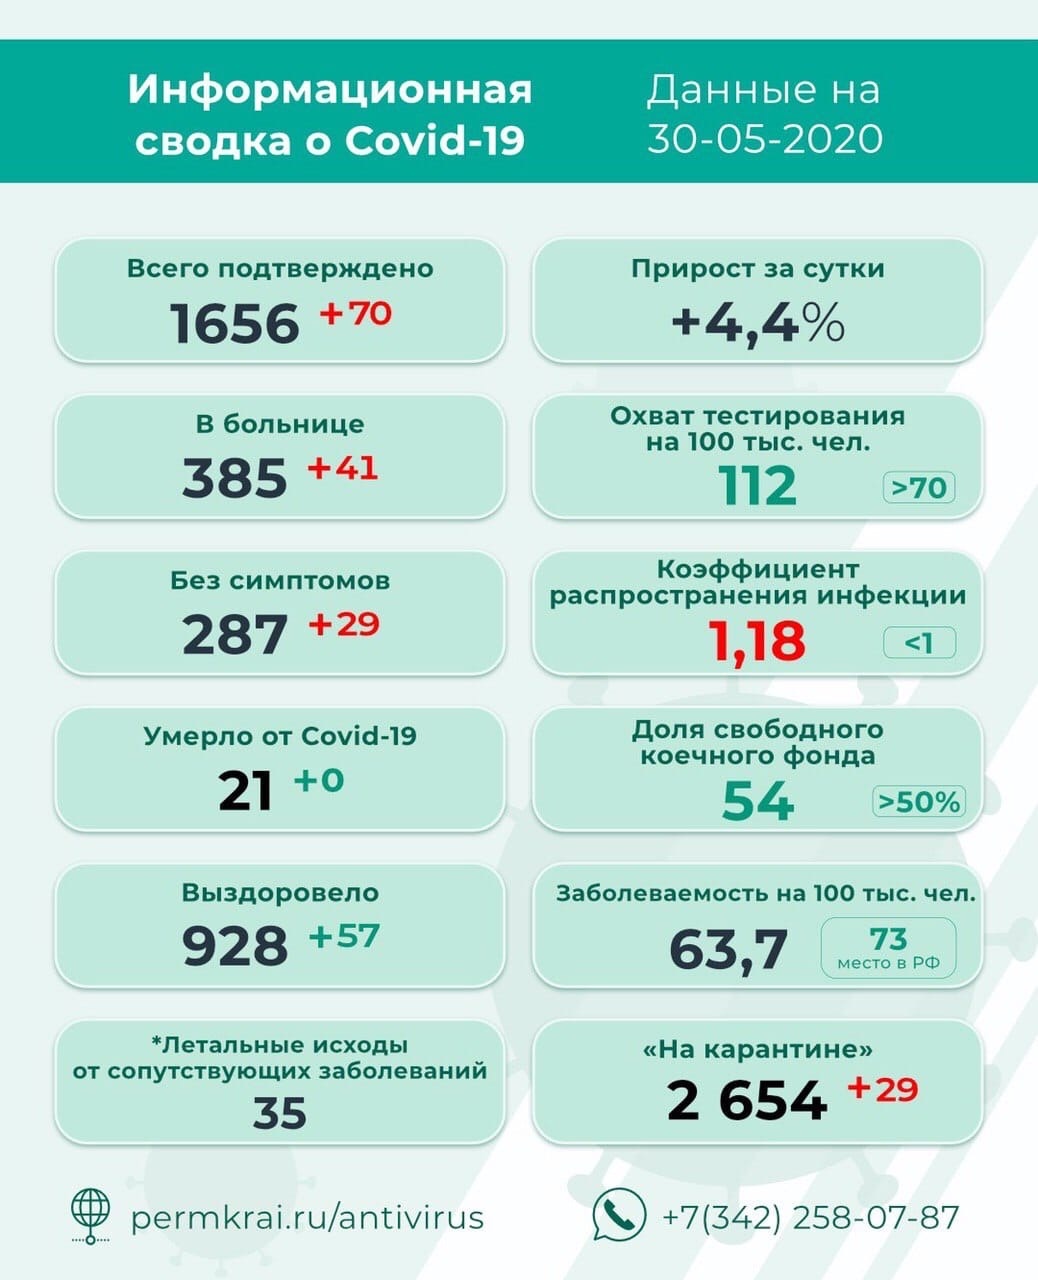 Фото: Оперштаб по противодействию распространению коронавируса в Пермском крае